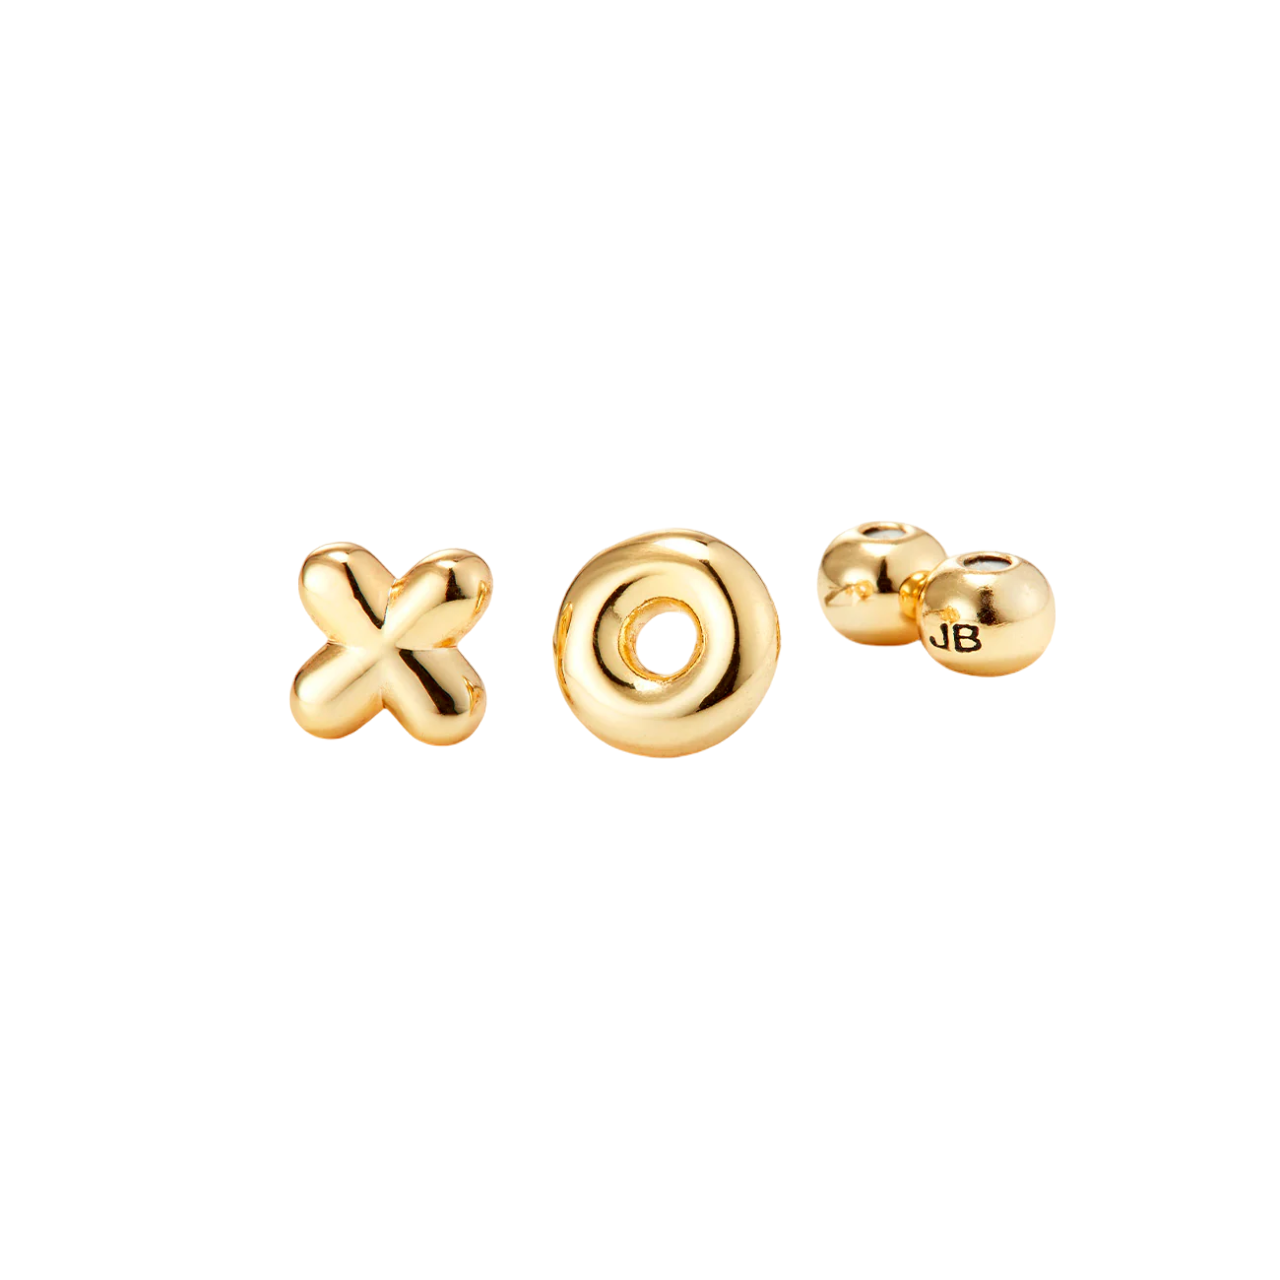 XO Studs - Gold